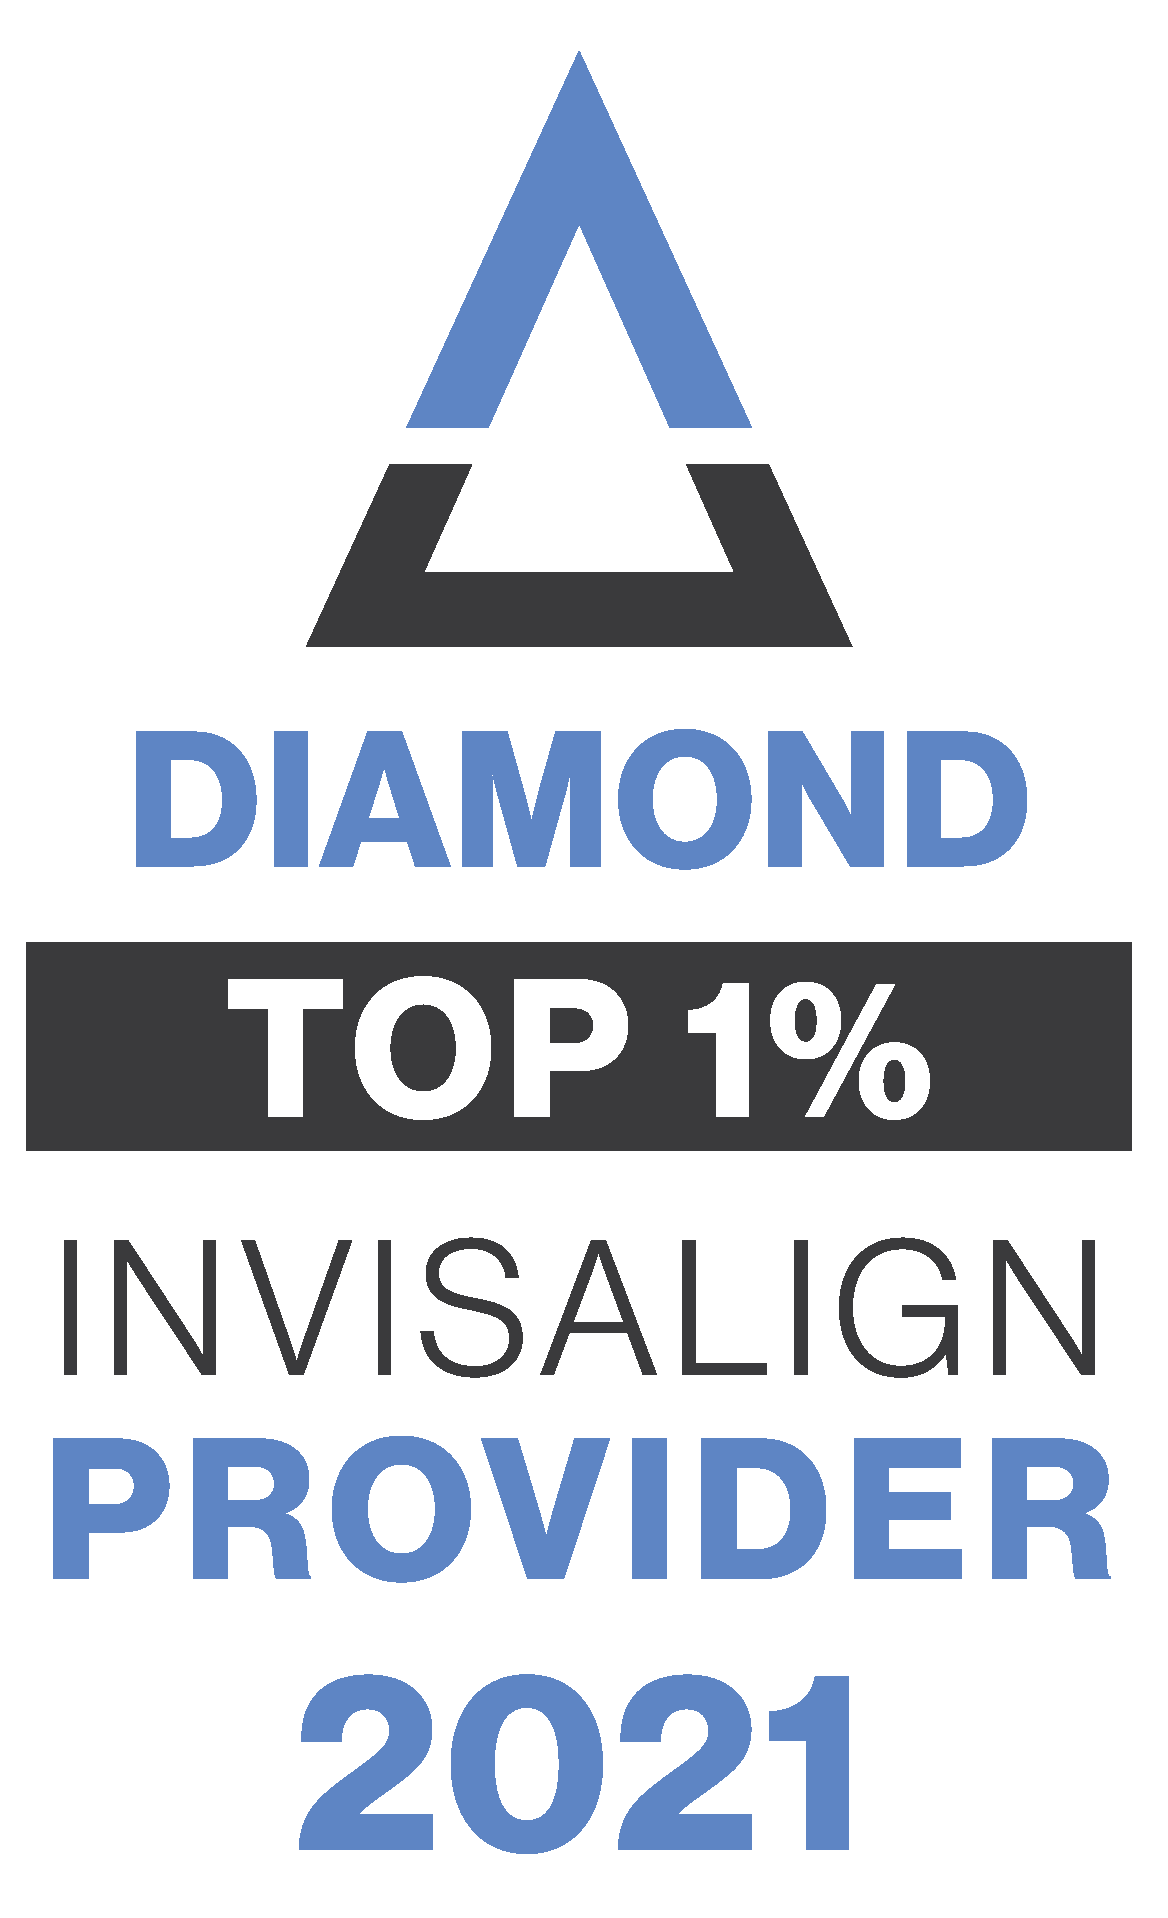 invisalign top 1% provider for 2021